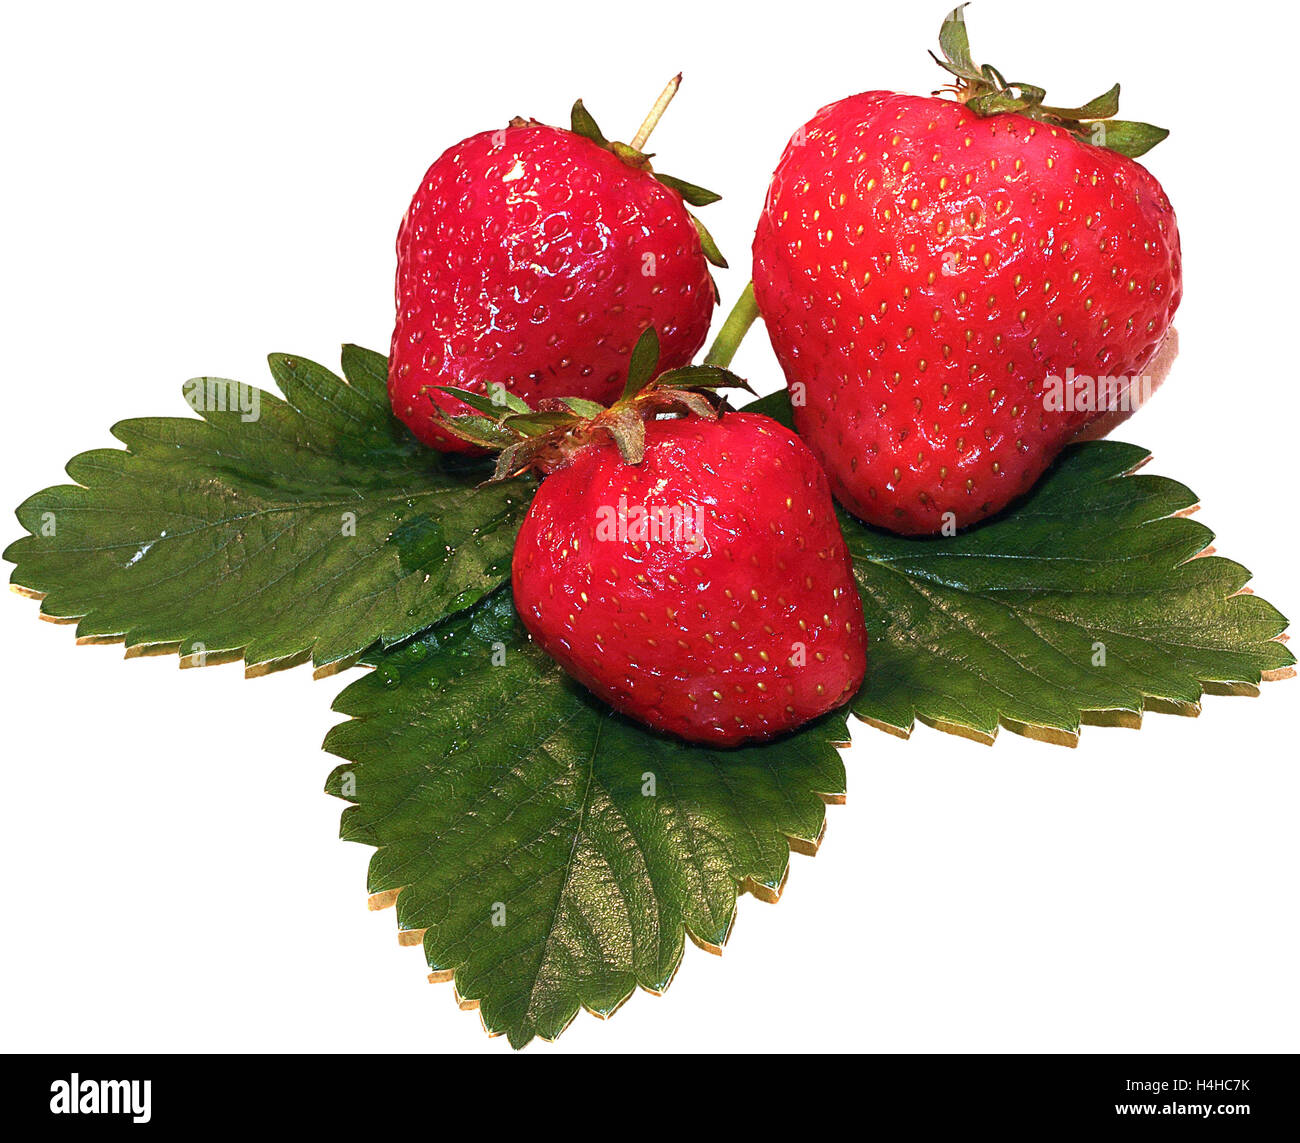 Ambiance Plateau Season fruit fraises rouge fleurs blanc vert fruits 13x21 Mel